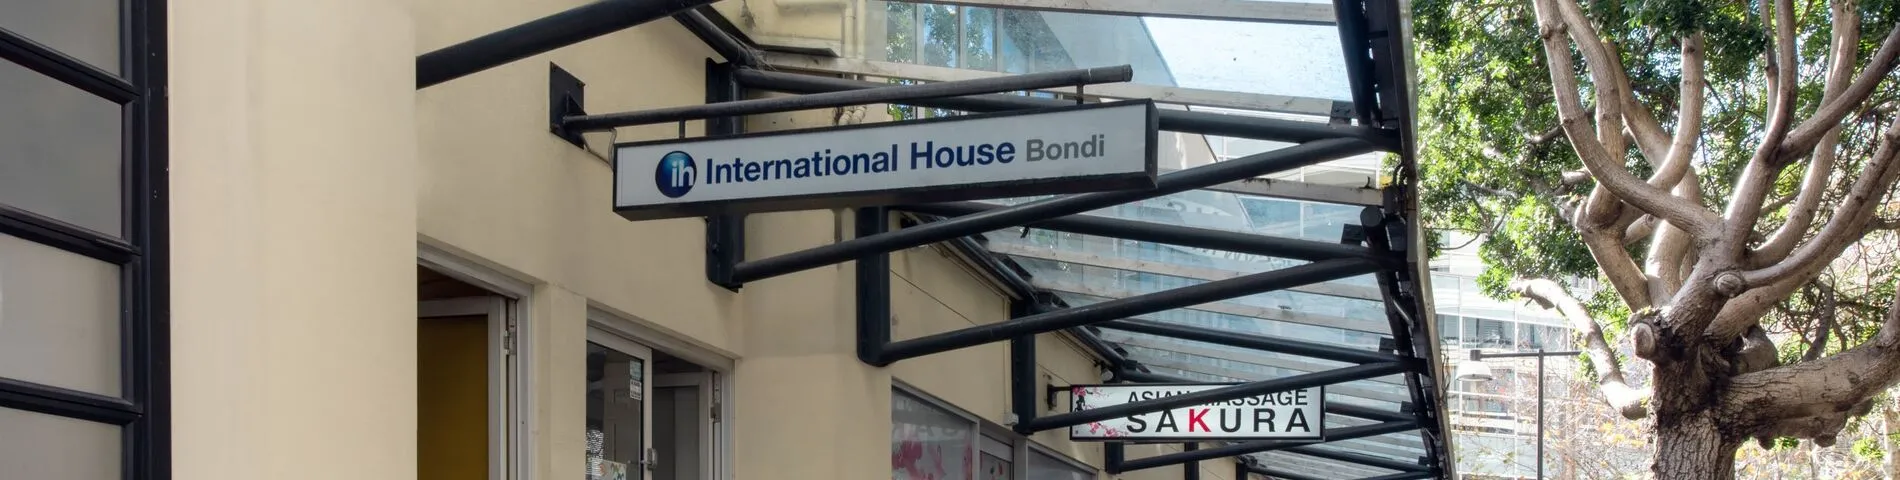 International House зображення 1